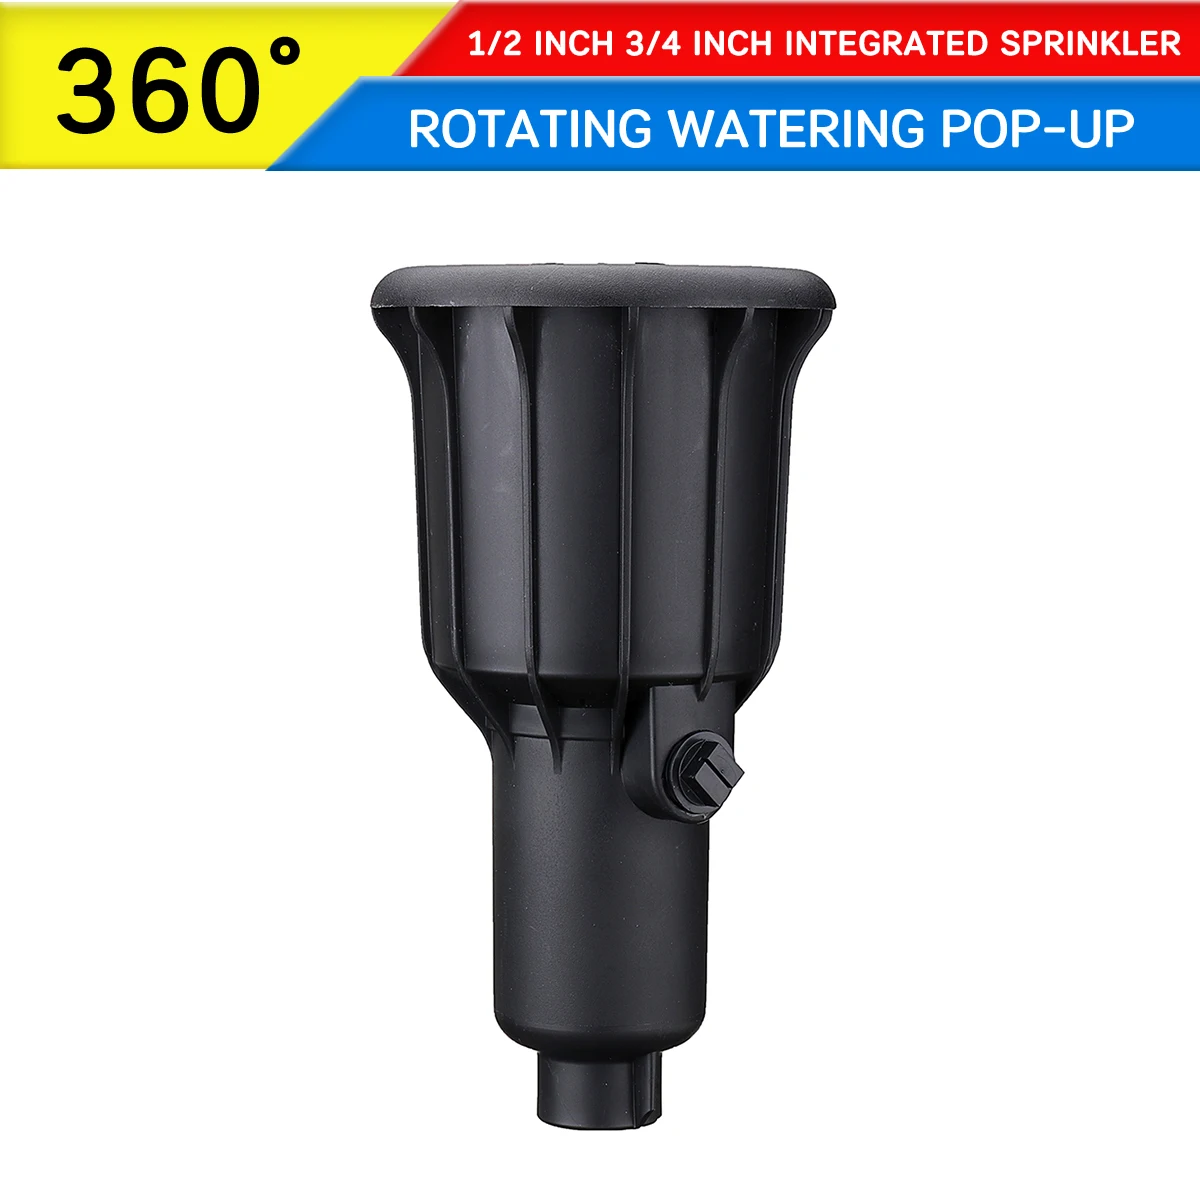 360 Degrees Rotating High Water Pressure Watering Pop-up Spray Head Sprinkler Integrated 1/2 Inch 3/4 Inch Sprinkler